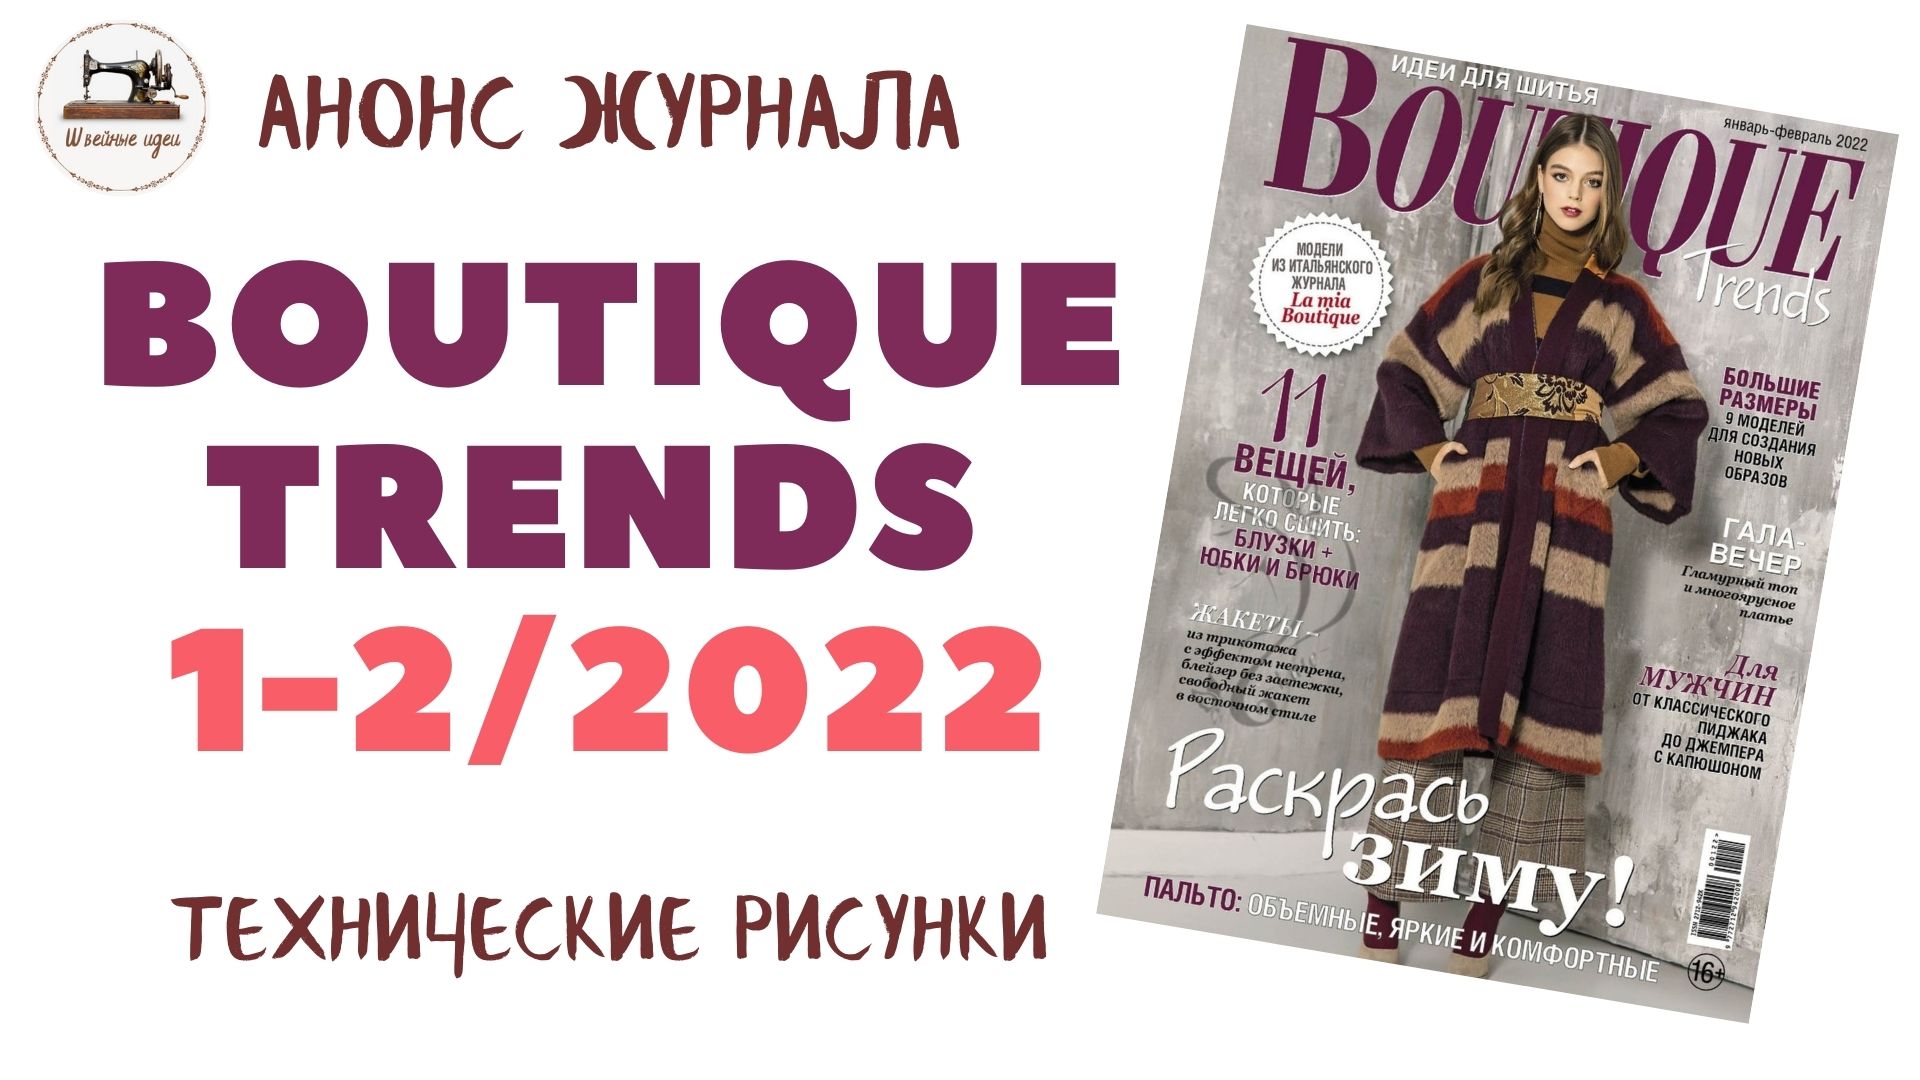 Boutique Trends 1-2/ 2022/ Январь-Февраль 2022/ Итальянская мода. Технические рисунки крупно